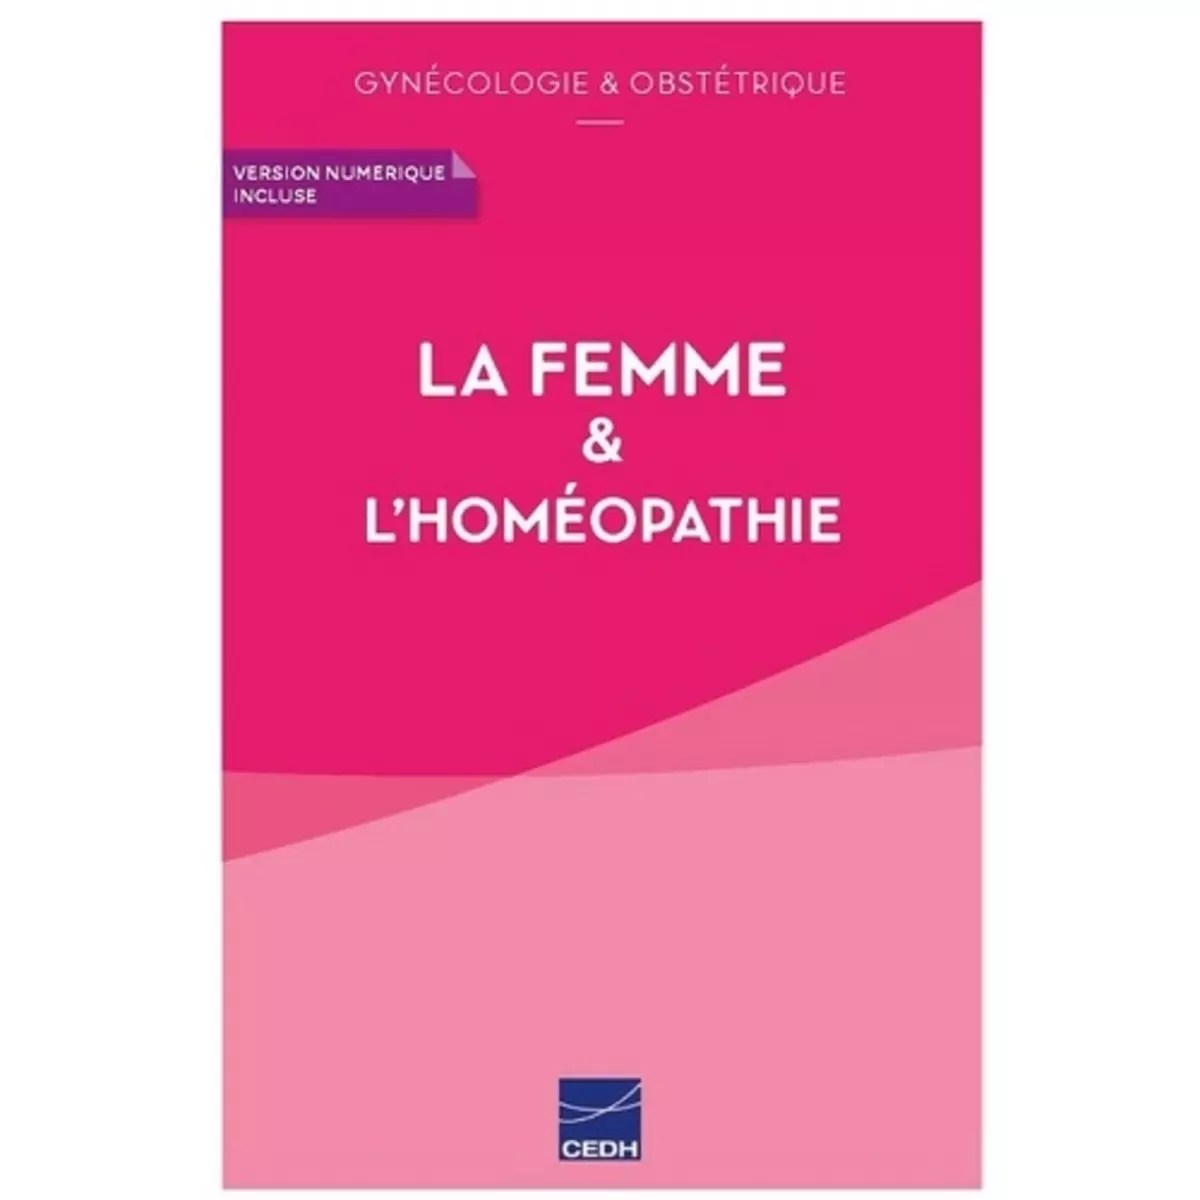  LA FEMME & L'HOMEOPATHIE. GYNECOLOGIE & OBSTETRIQUE, Maisonneuve Martine